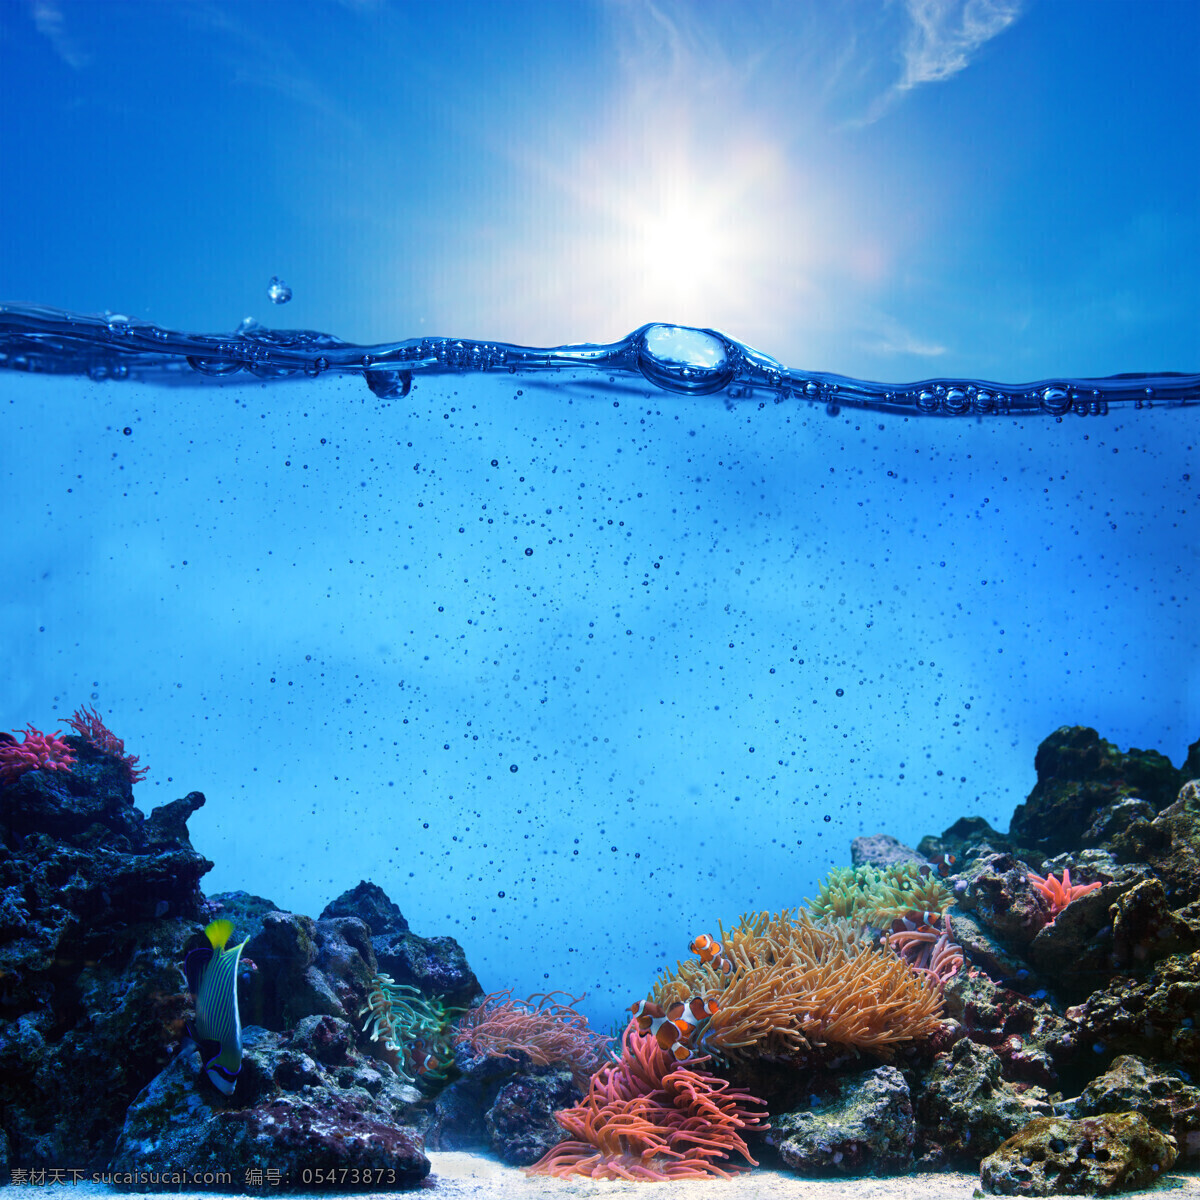 天空 下 水面 海底 世界 蓝天 太阳 海底世界 珊瑚 大海图片 风景图片